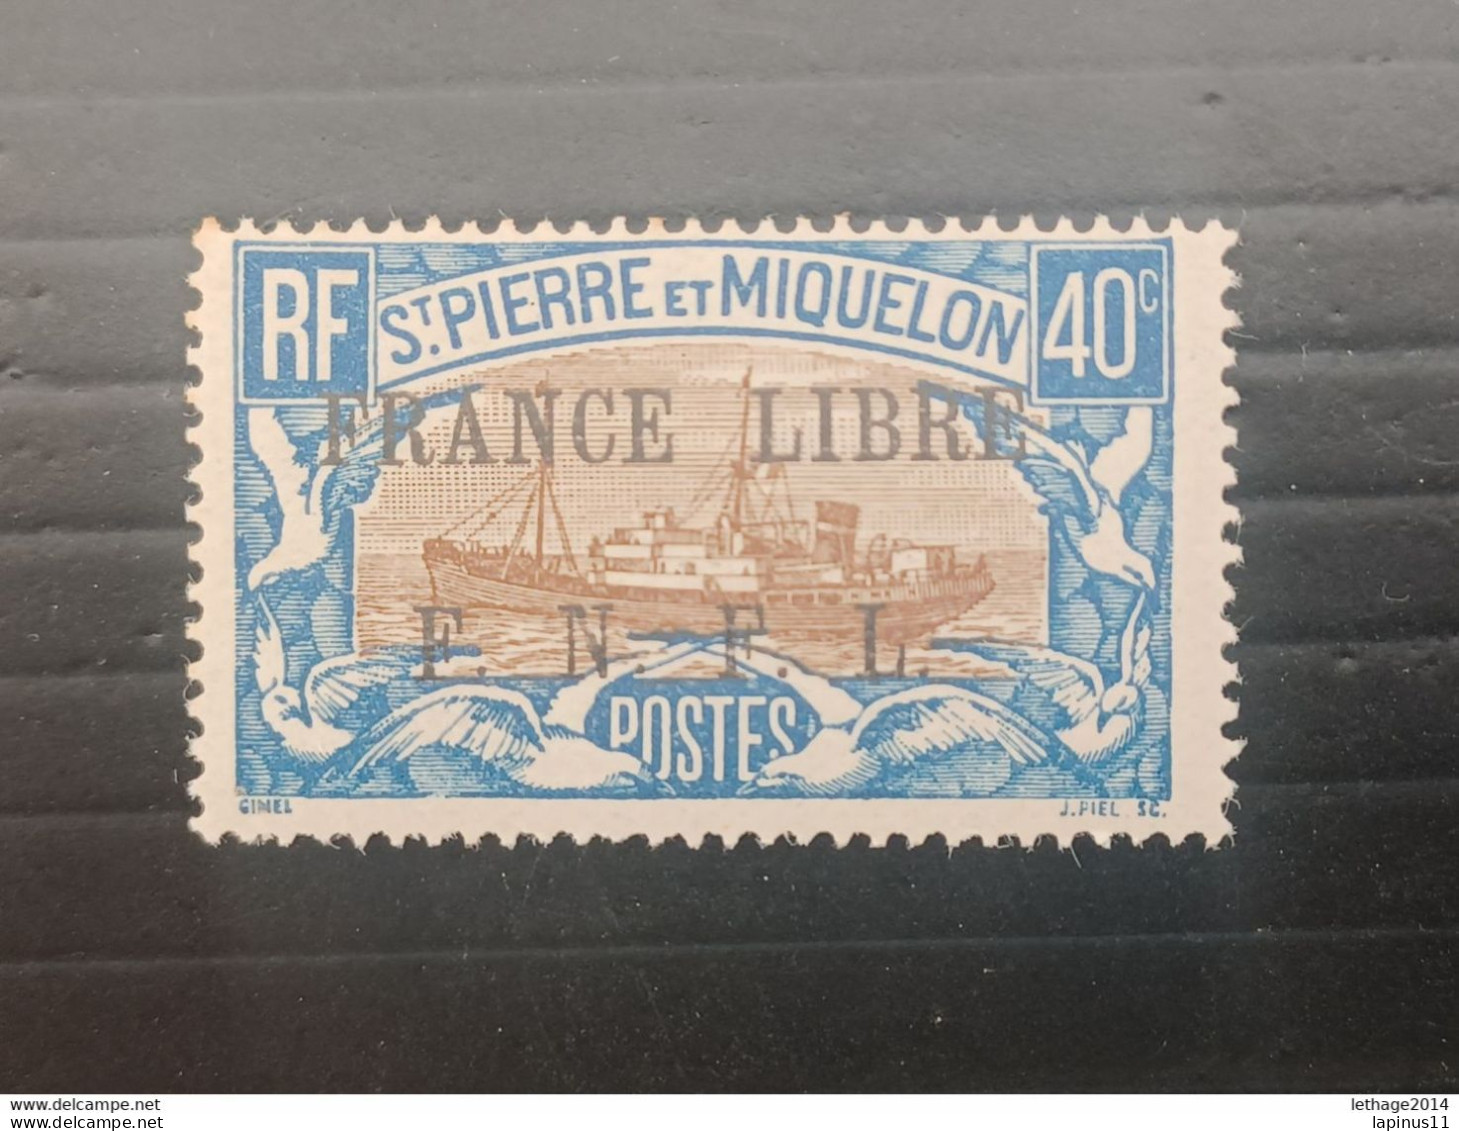 ST PIERRE ET MIQUELLON 1941 STAMPS OF 1922 OVERPRINT FRANCE LIBRE F N F L MNH - Neufs